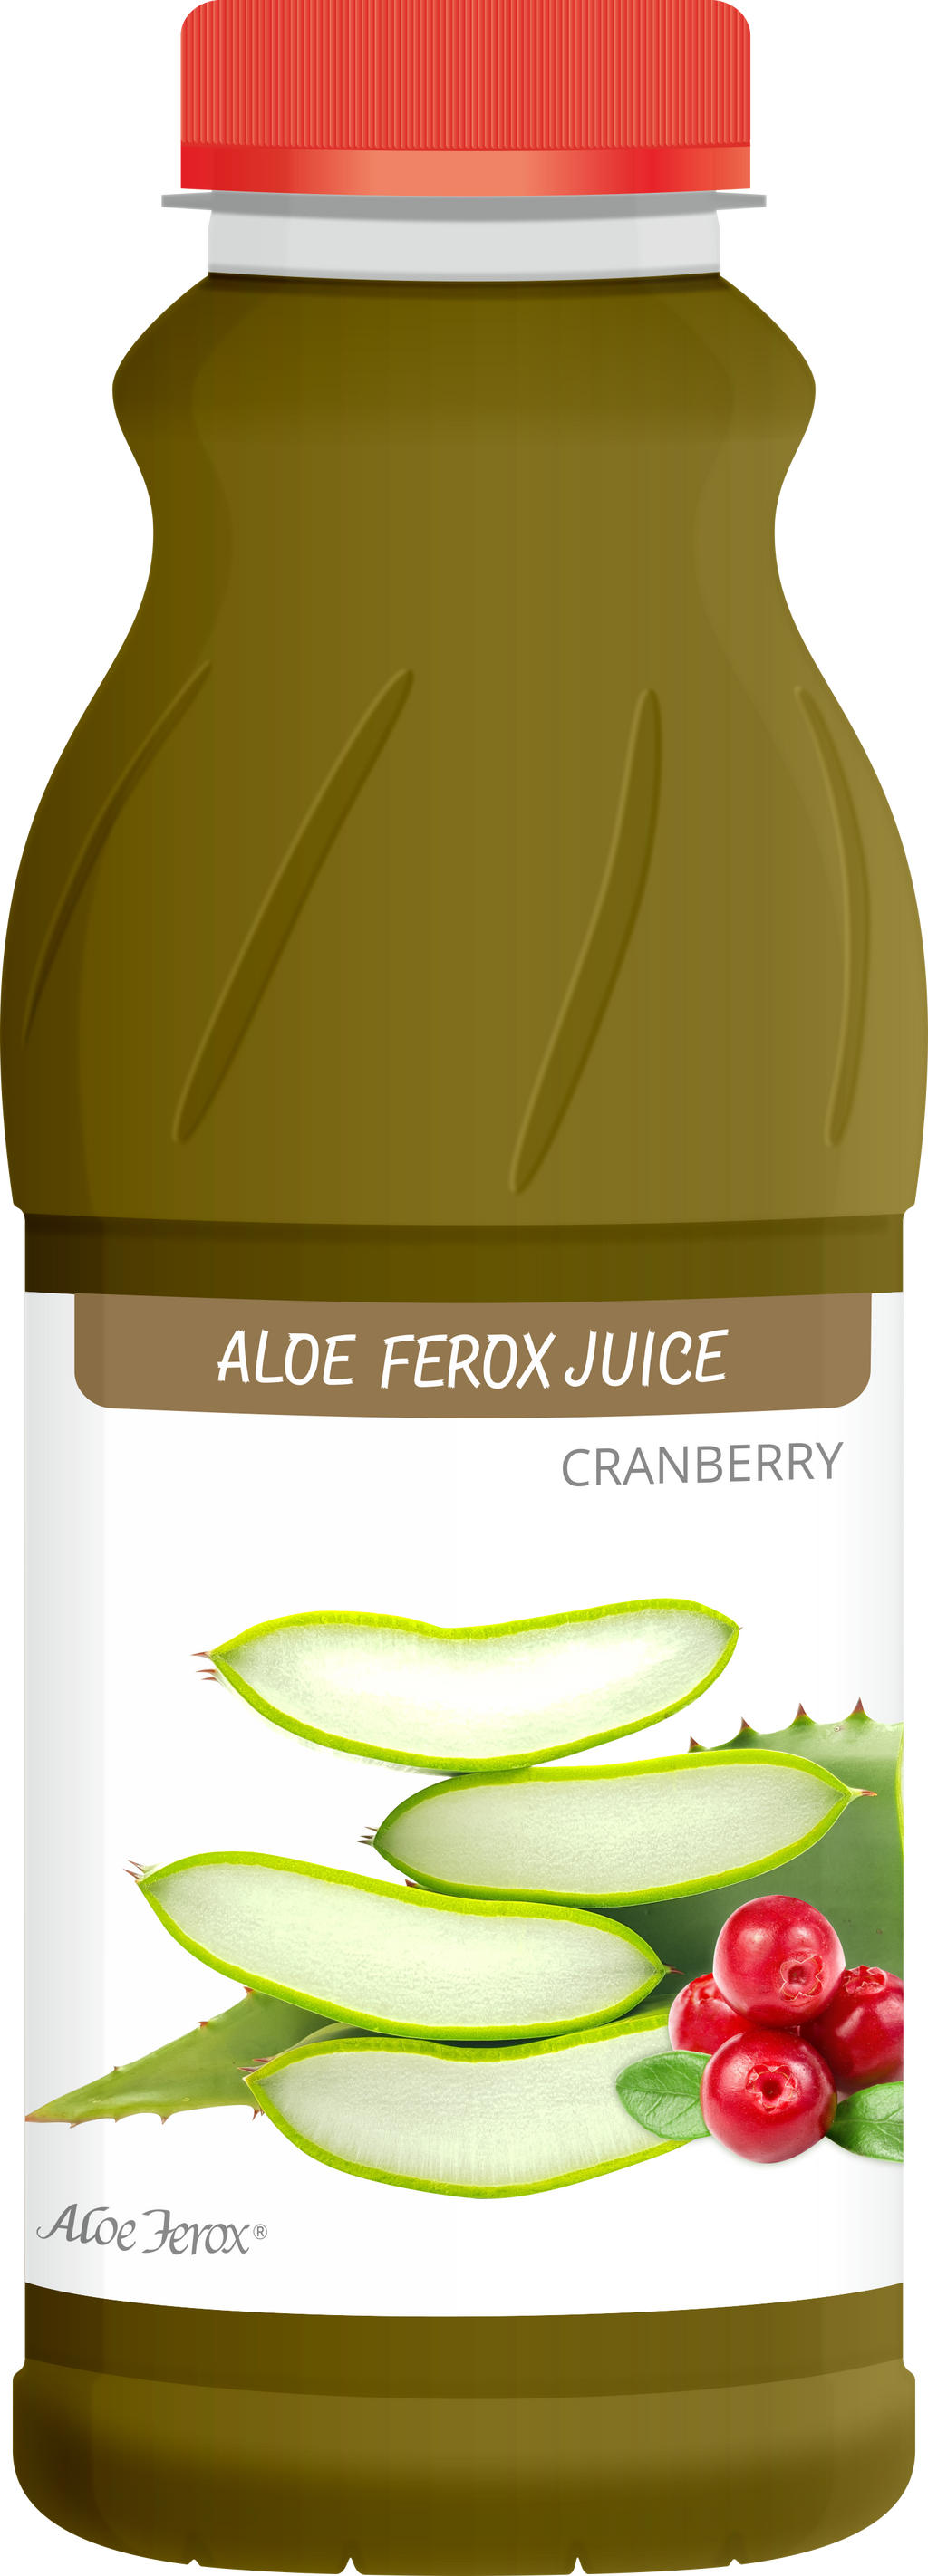 Aloe Ferox Juice Cranberry